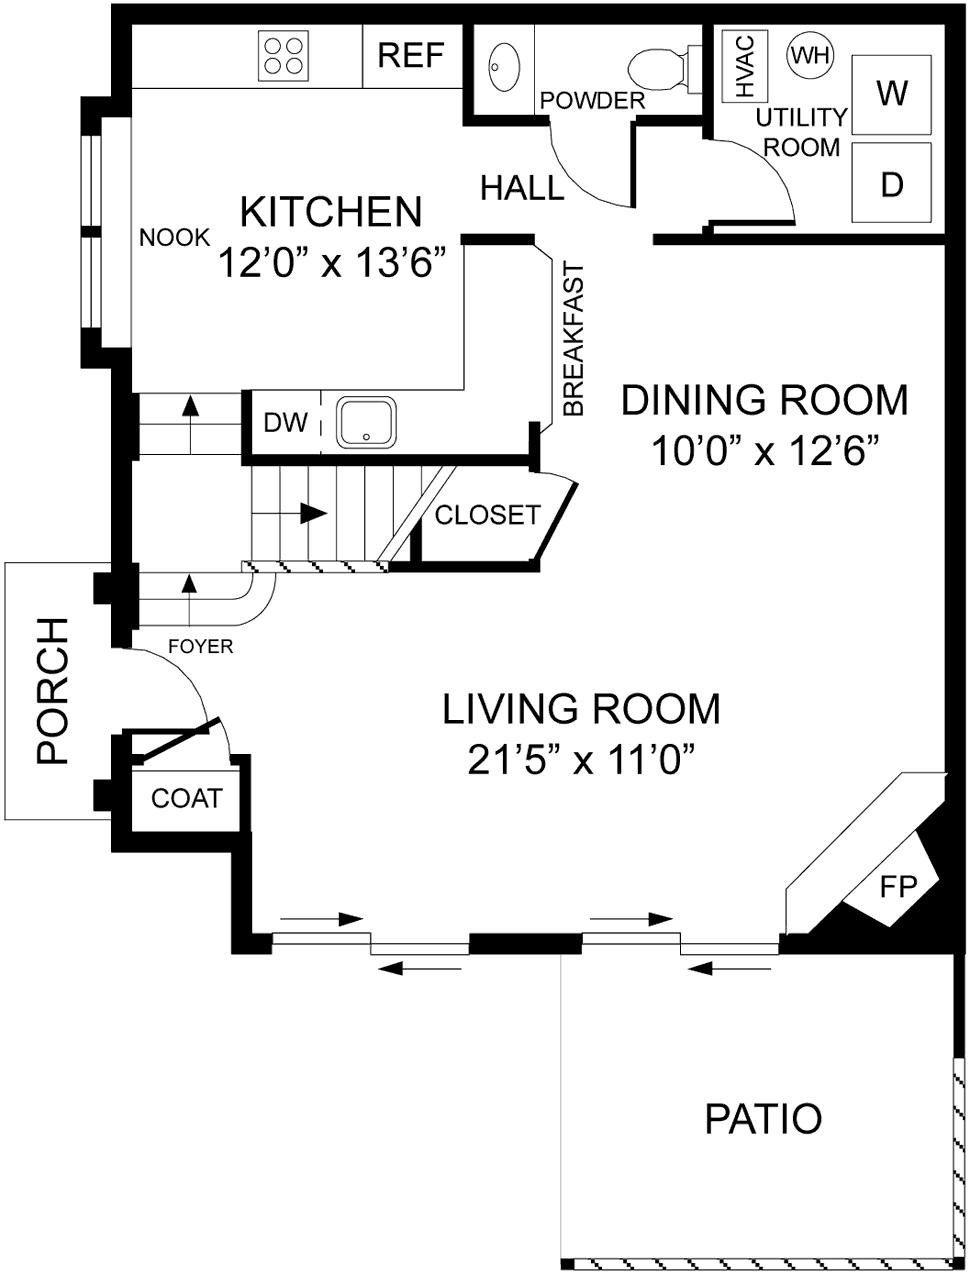 1st Floor Plan - The Adams